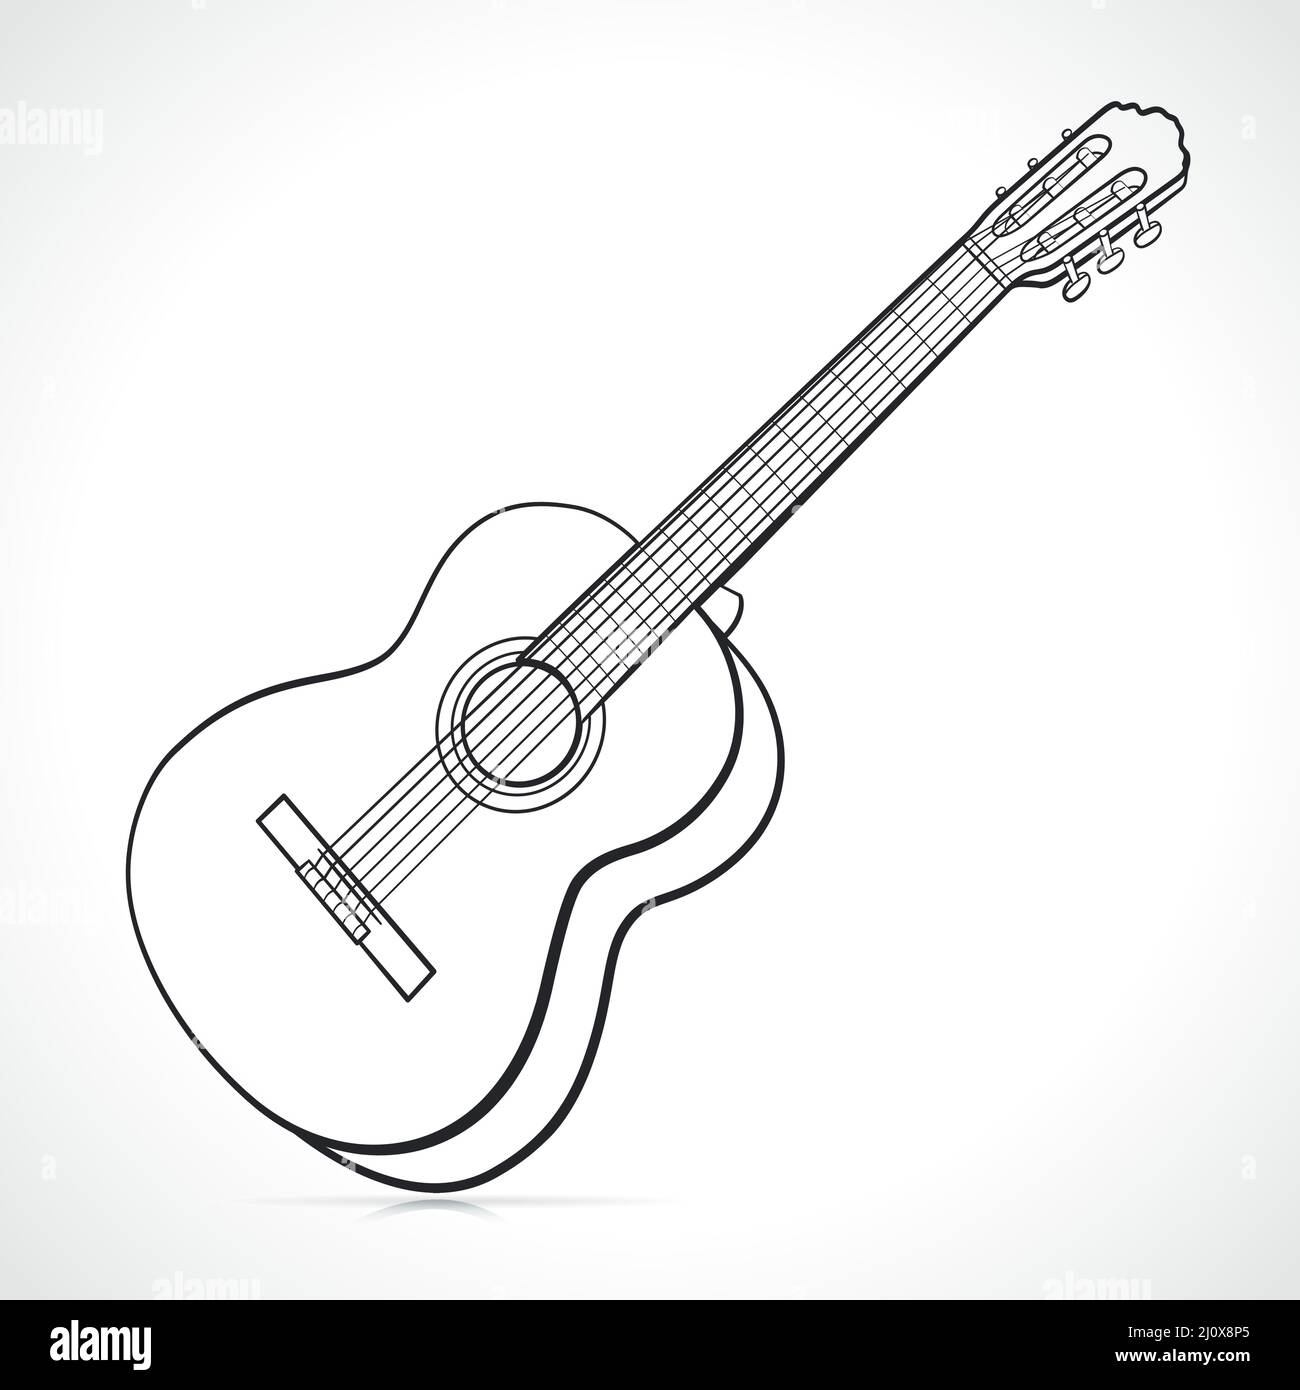 Akustische Gitarre schwarz-weiß isolierte Illustration Stock-Vektorgrafik -  Alamy